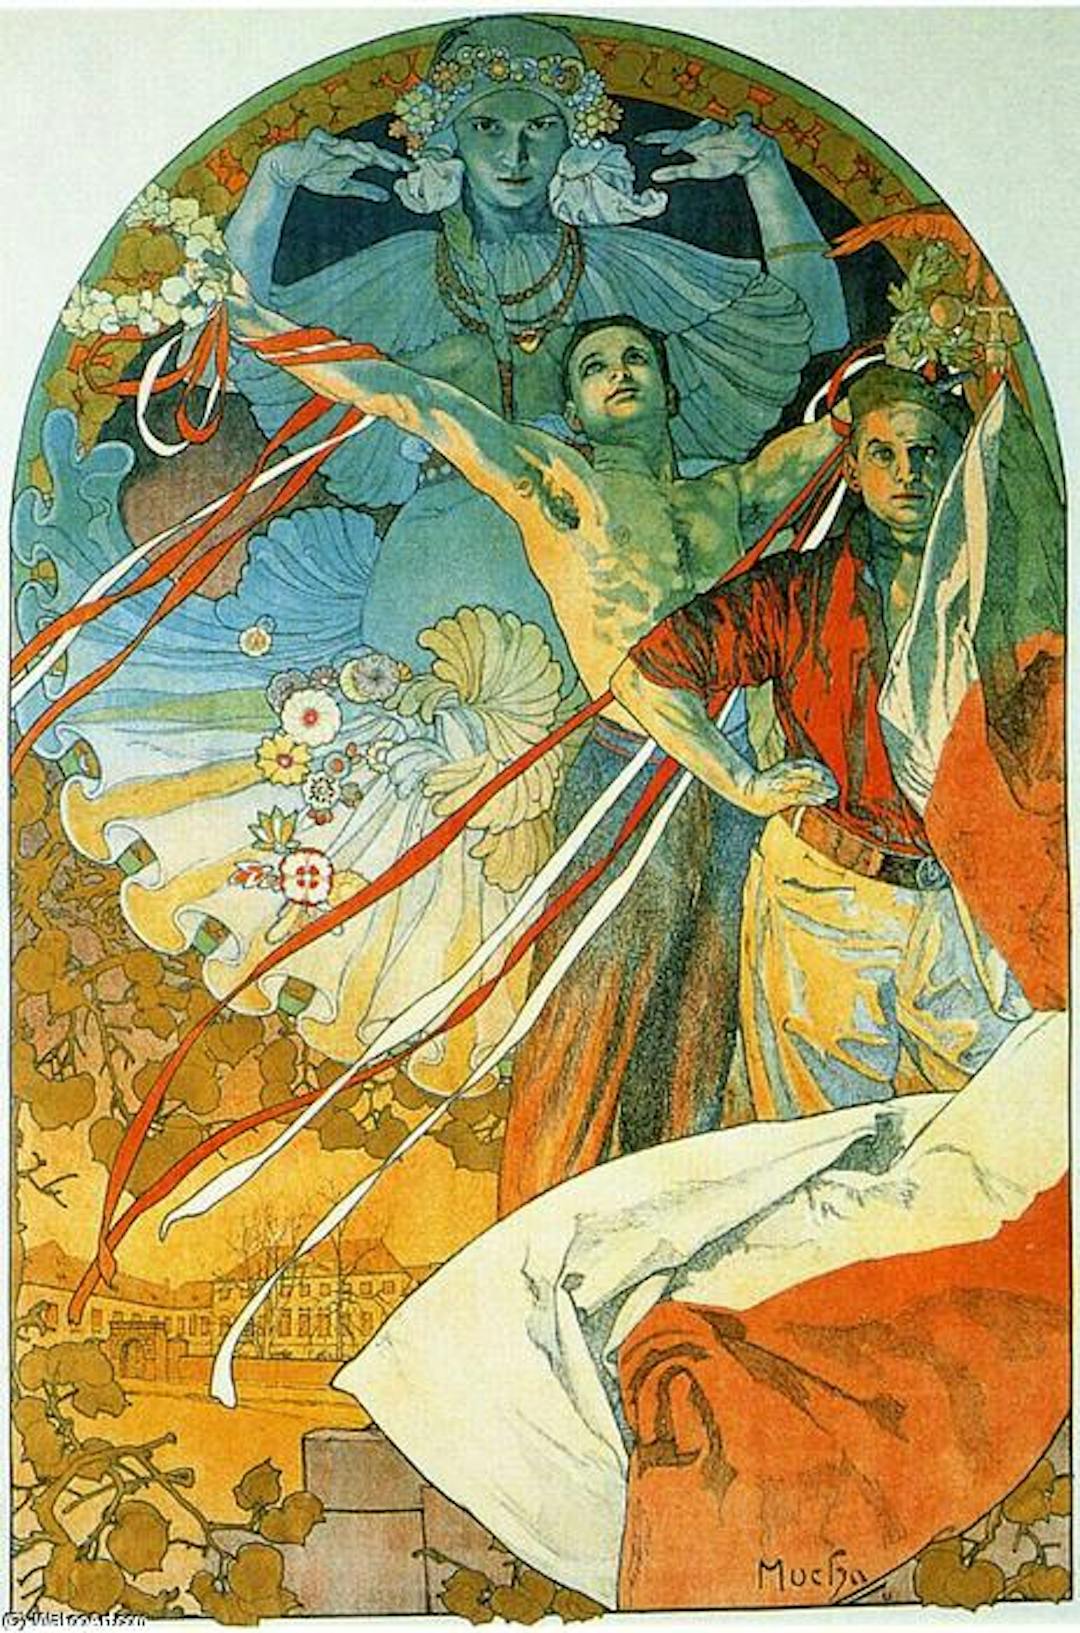 Art Nouveau akımının önemli yaratıcılarından Alfons Mucha'nın 8. Sokol Festivali posteri. https://wikioo.org/ adresinde mevcuttur.